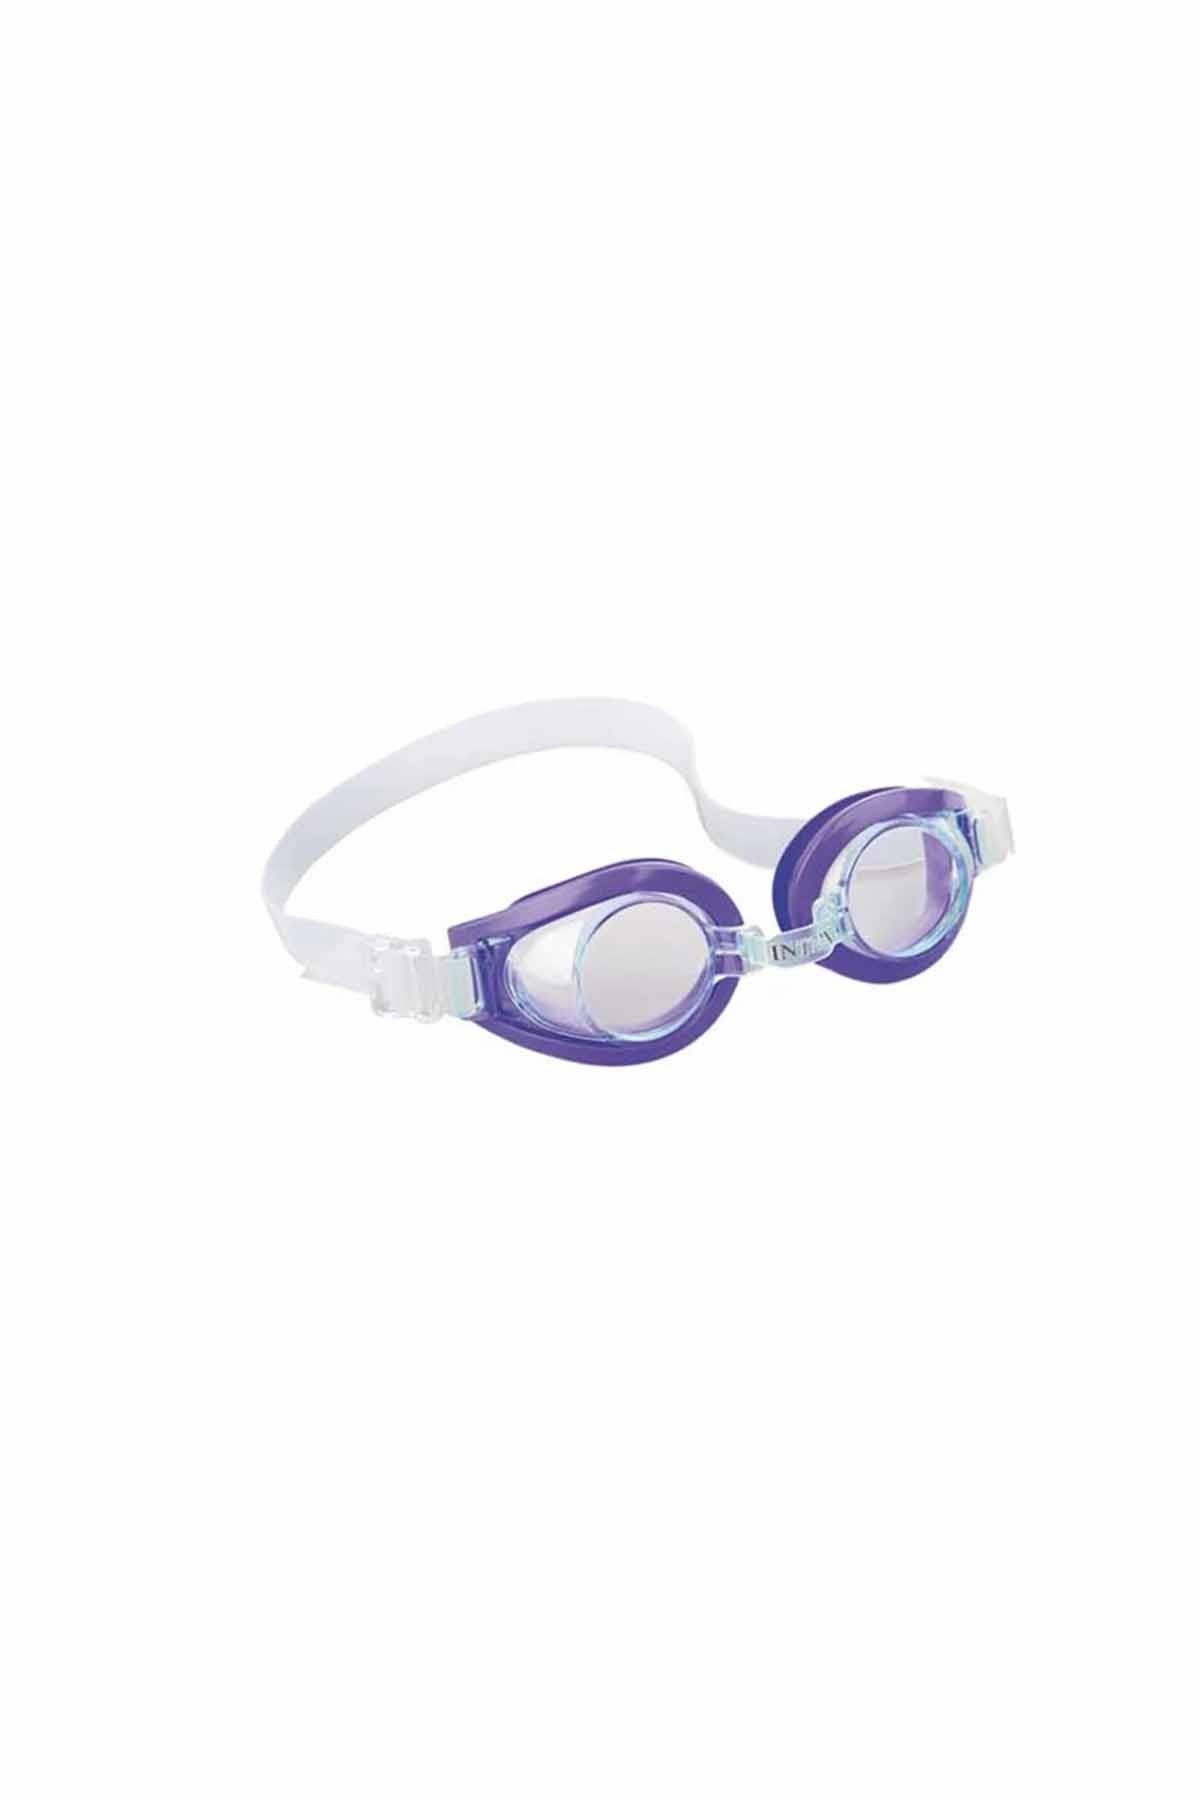 Intex Yüzücü Gözlüğü